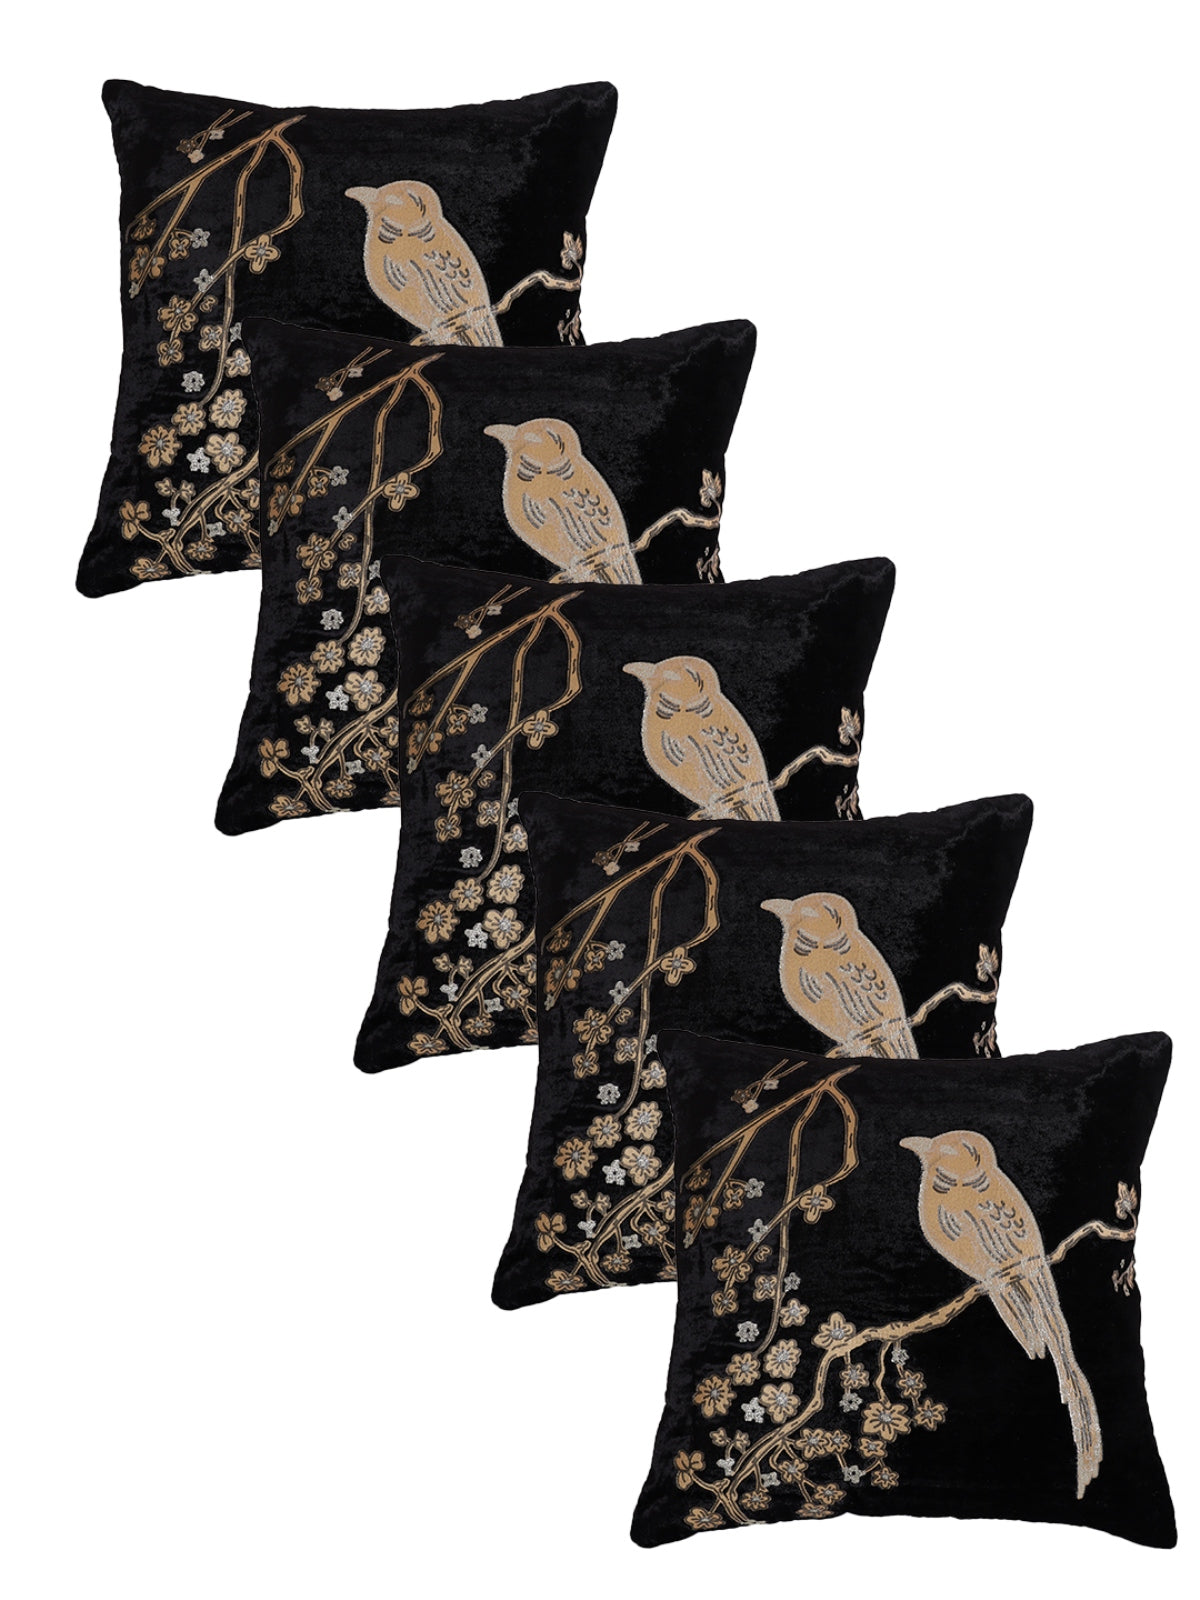 Velvet Bird Designer Cushion Cover 16x16 Inche, Set of 5 - Black